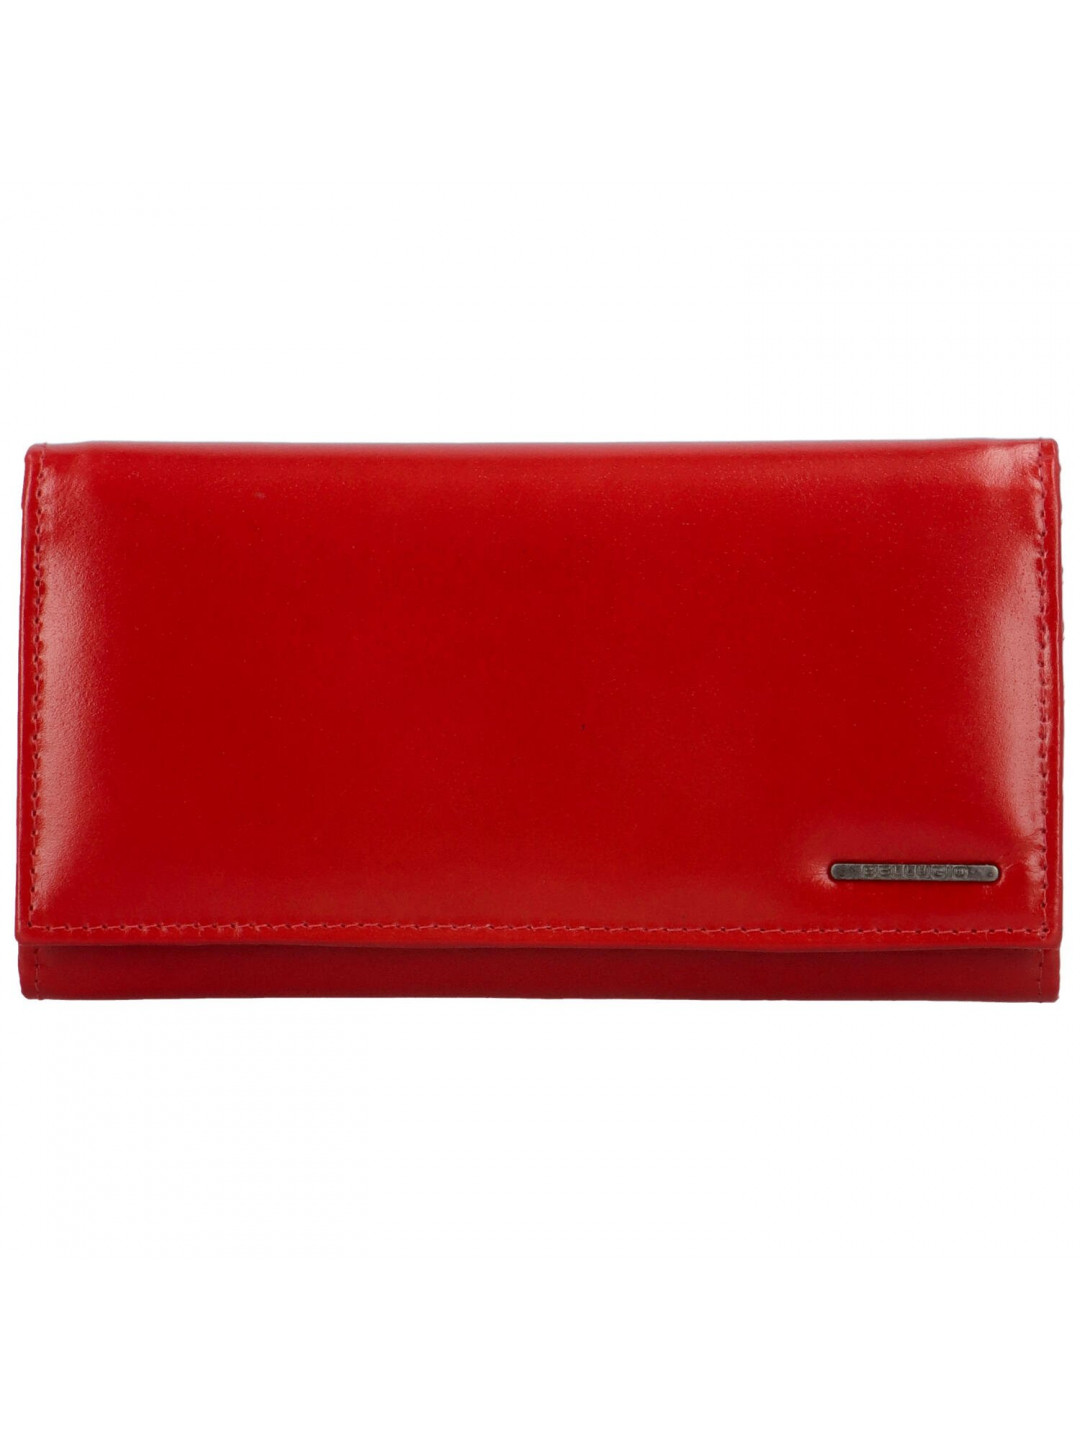 Dámská kožená peněženka červená – Bellugio Soffa